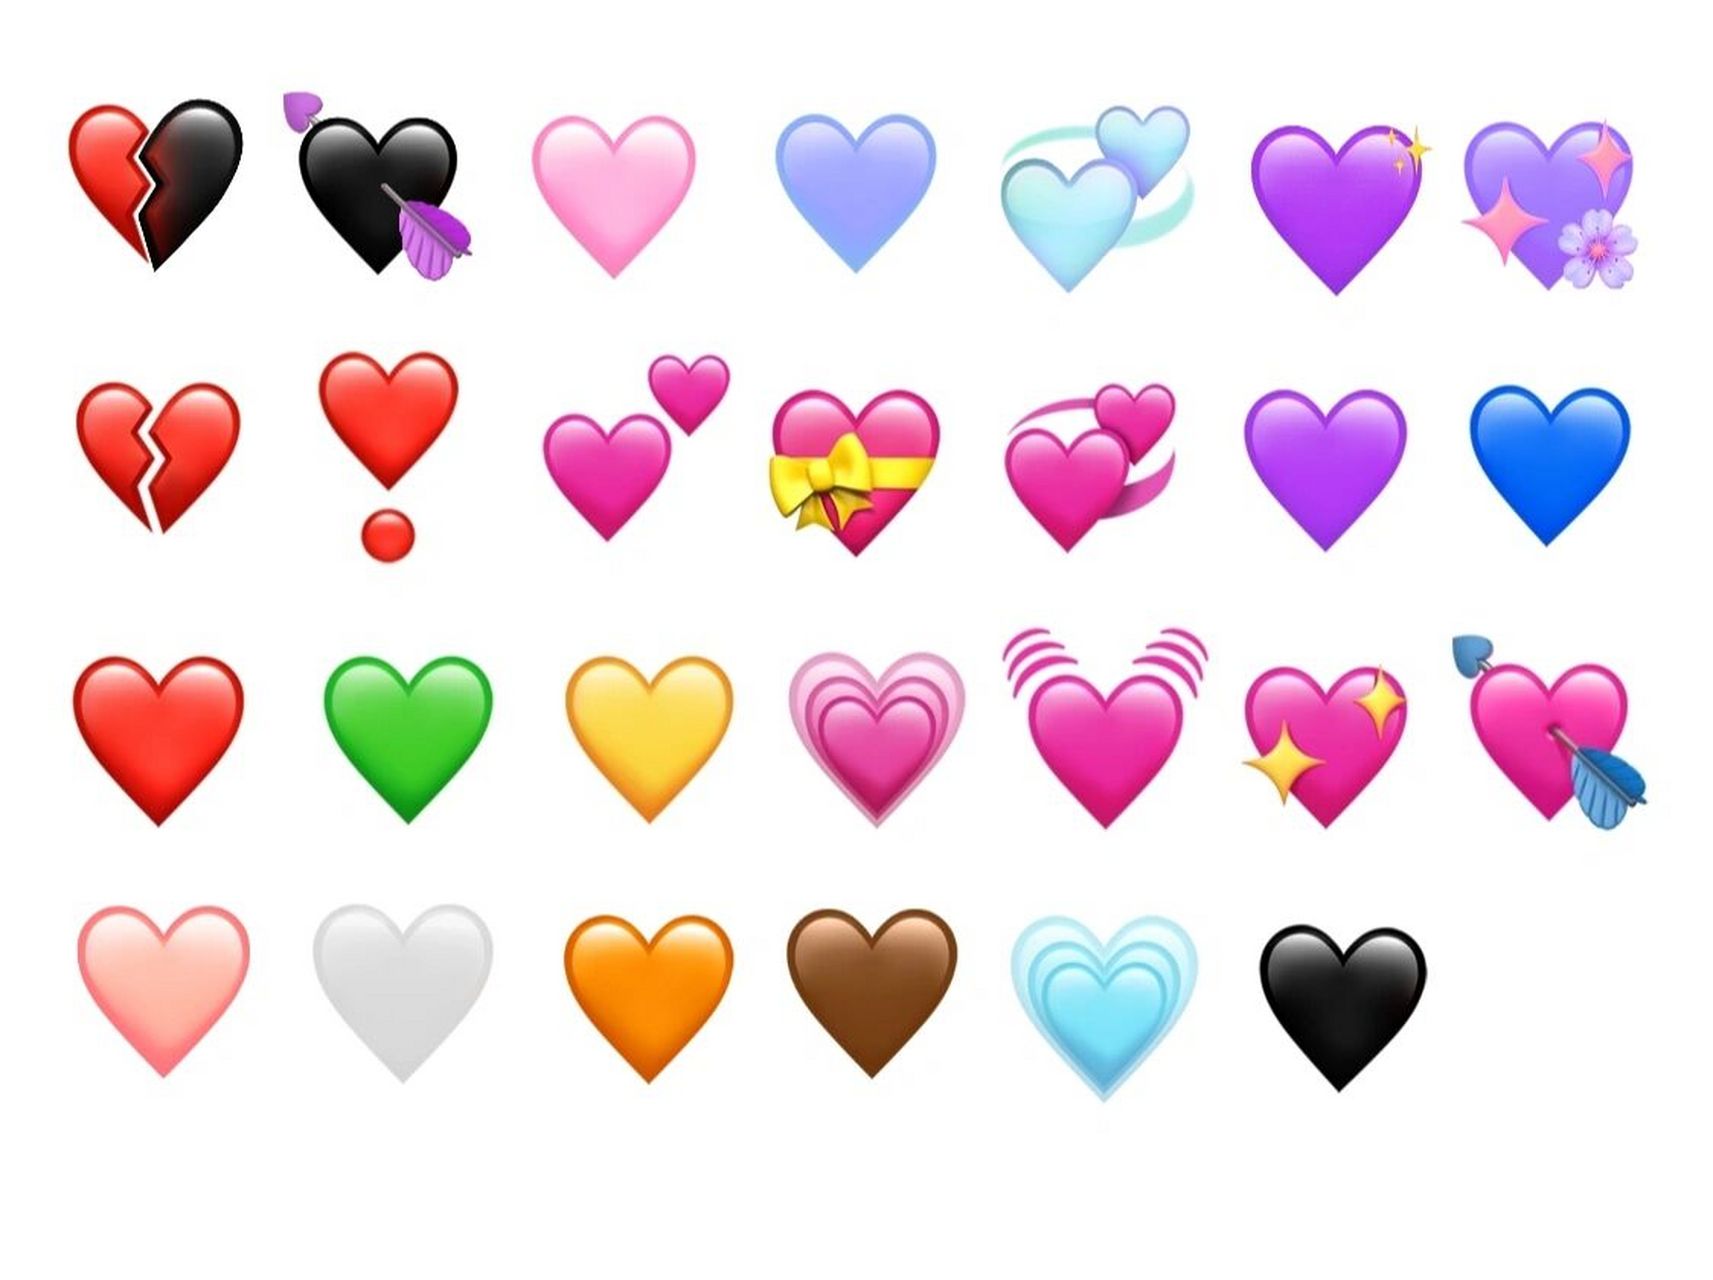 emoji表情爱心78篇Ⅱ拼贴手账素材 自己整理的/少量,白底很好自抠